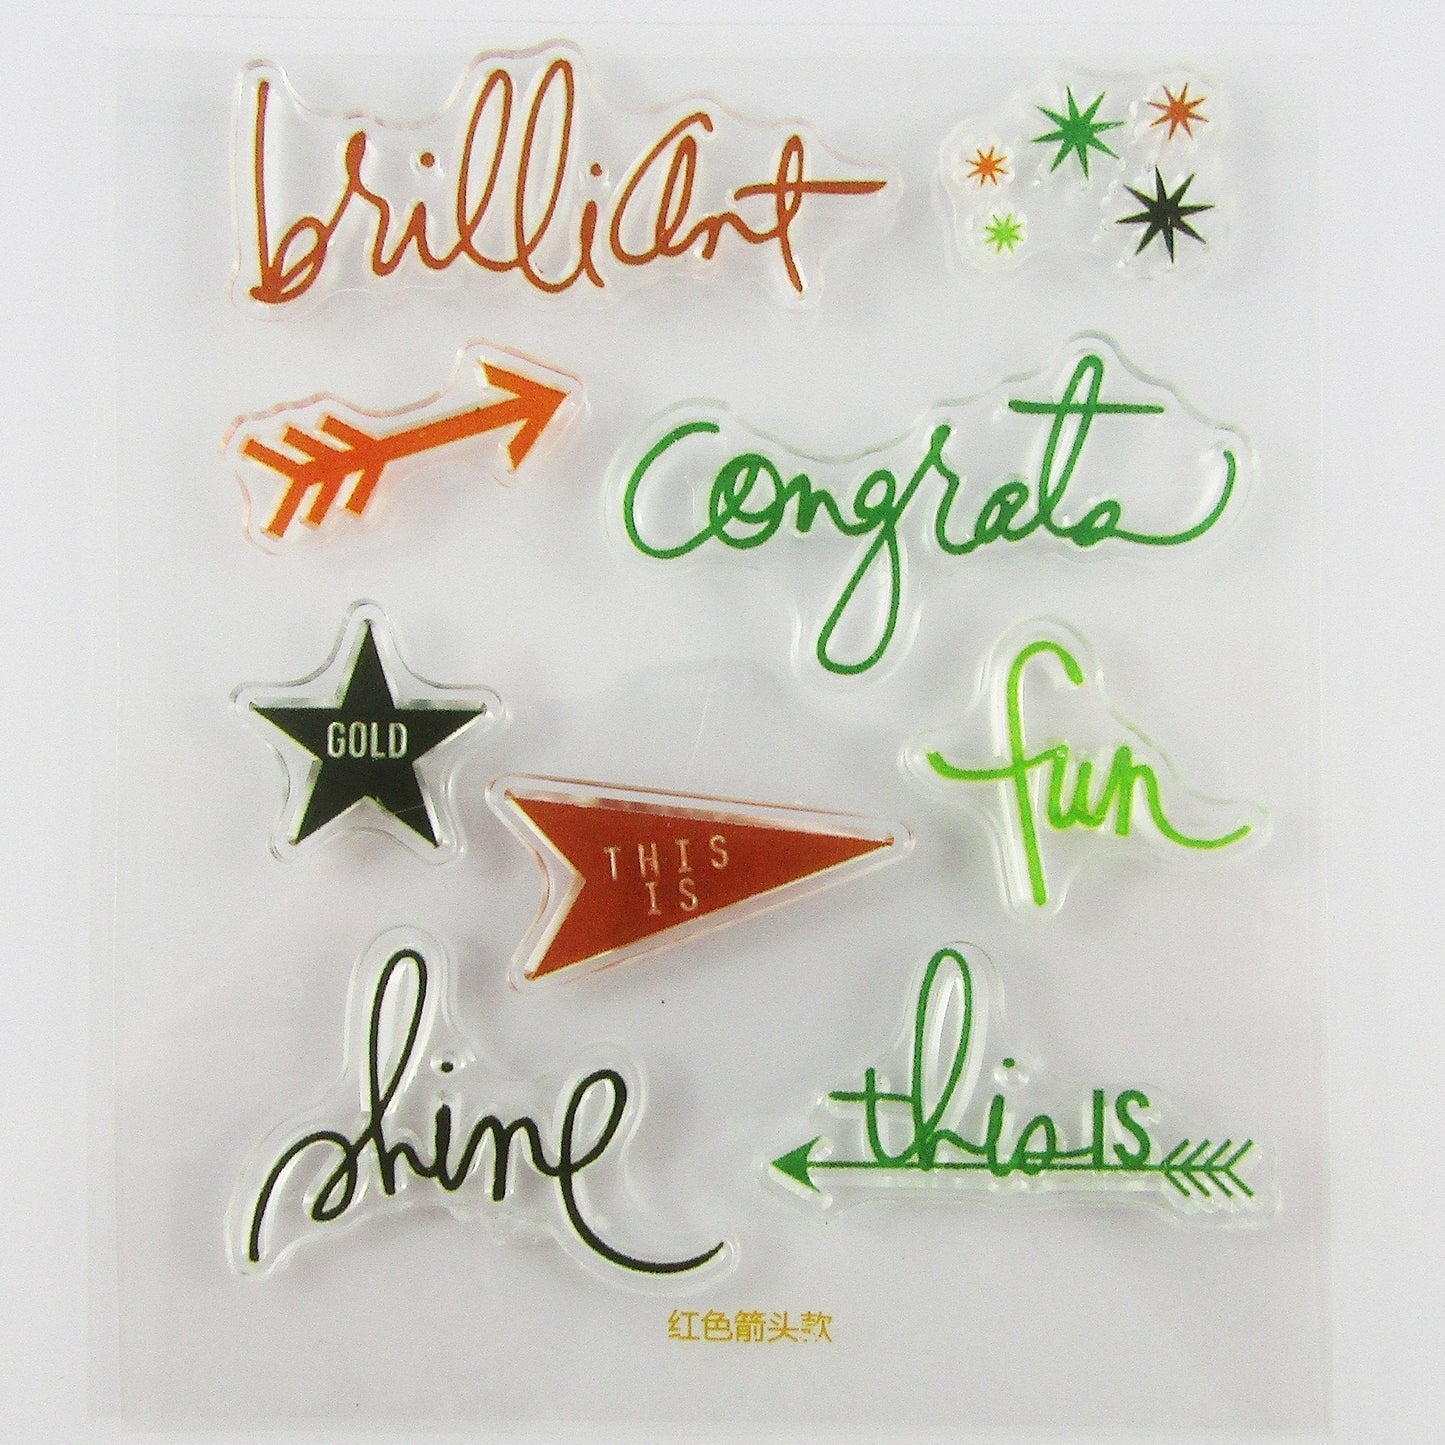 Brilliant Congrats Shine Message Clear MINI Stamp Silicone Rubber Card Making